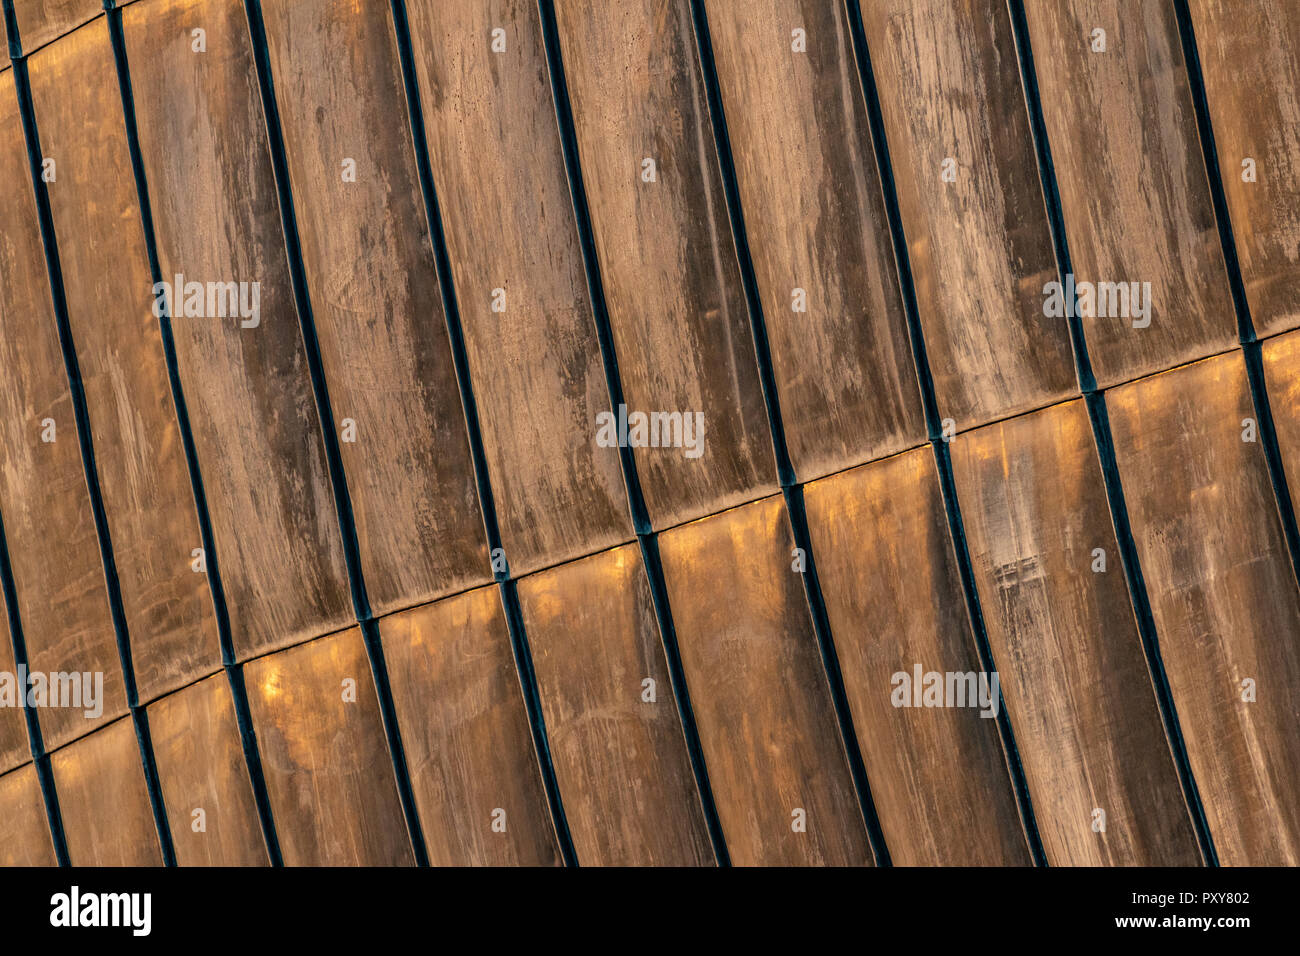 Dettagli di acciaio arrugginito fogli strutturali, utilizzato per esterno superficie di copertura in organic design architettonico. Superficie con tracce di zinco. Foto Stock